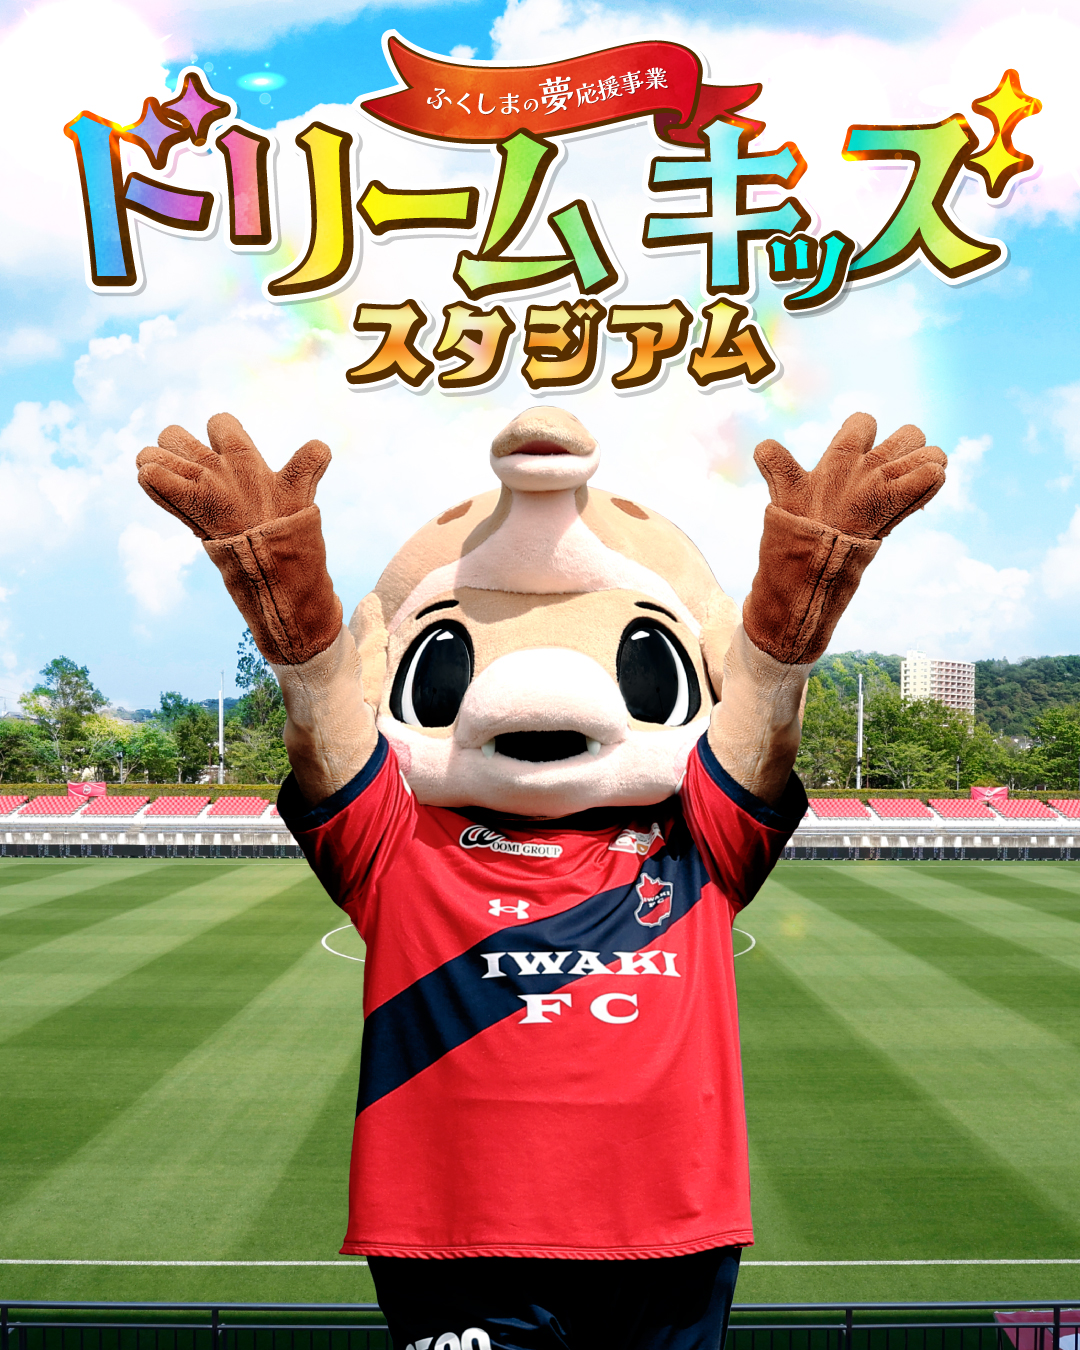 ホームゲーム2試合にて、福島県「ふくしまの夢応援事業」各種参加型イベントを実施のお知らせ